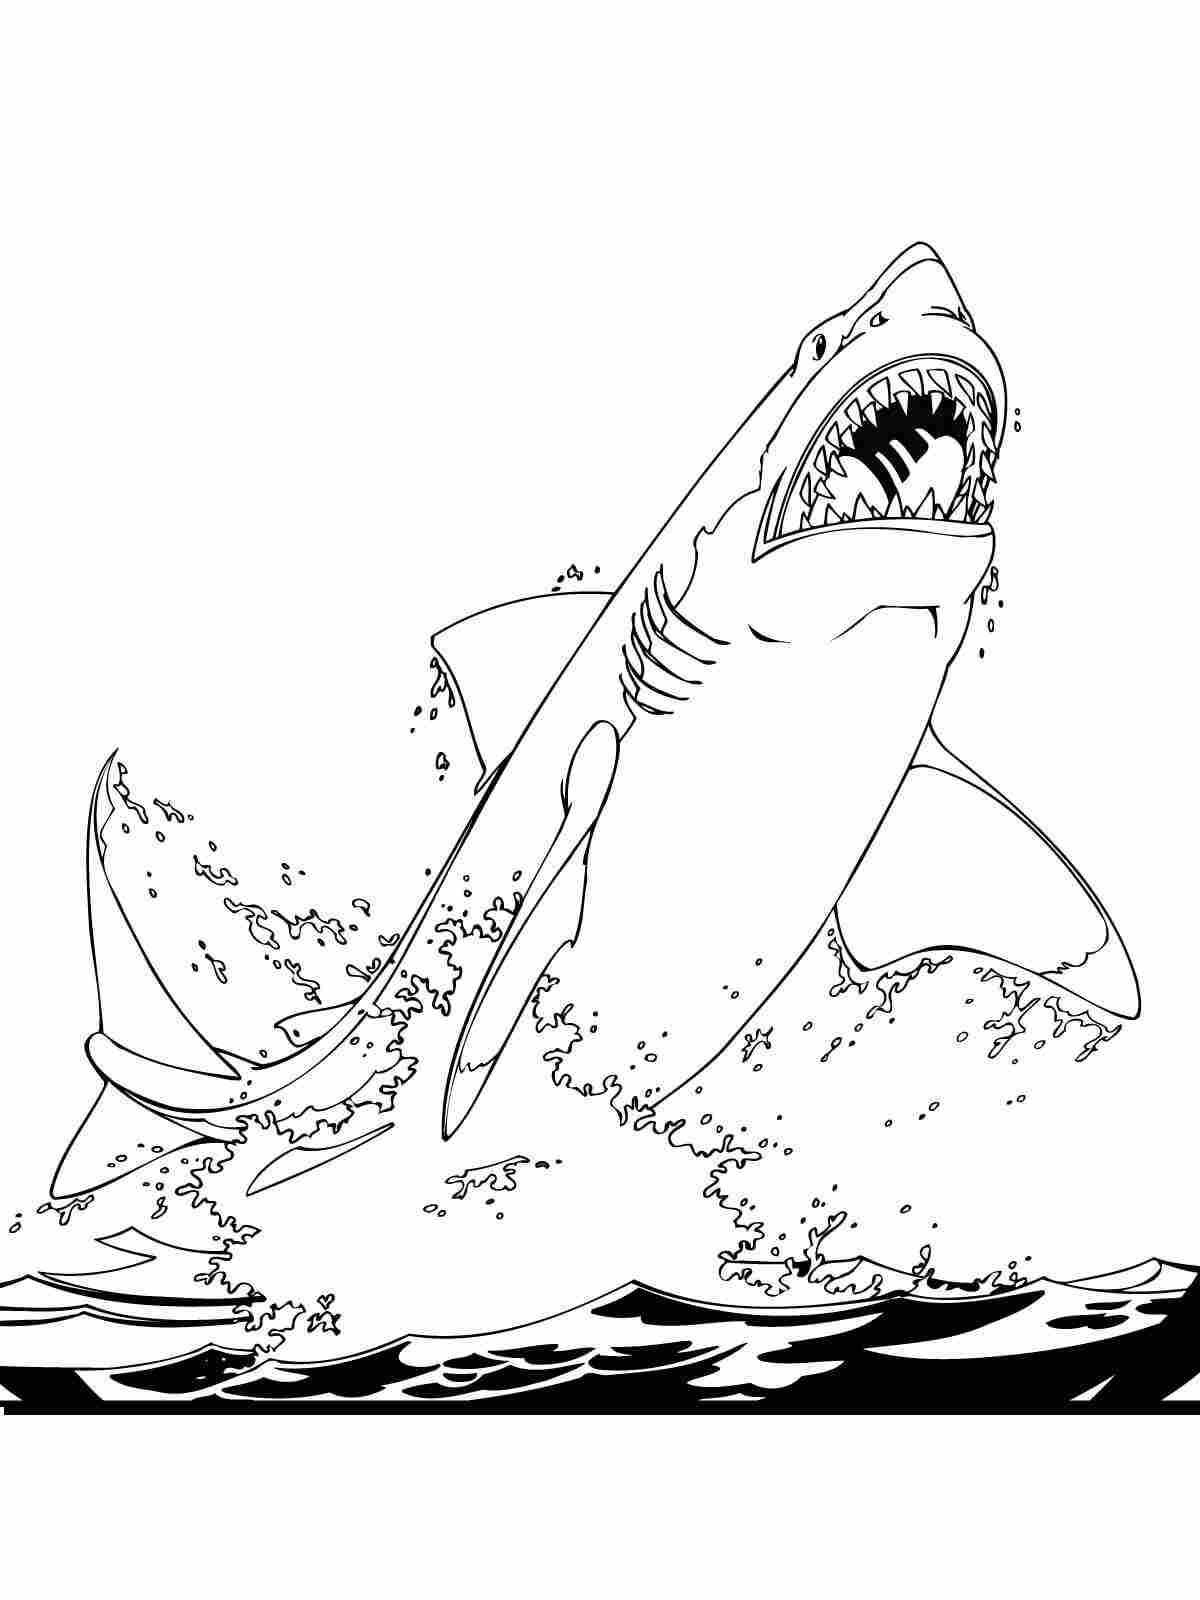 Il grande squalo bianco salta fuori dall'acqua da Shark